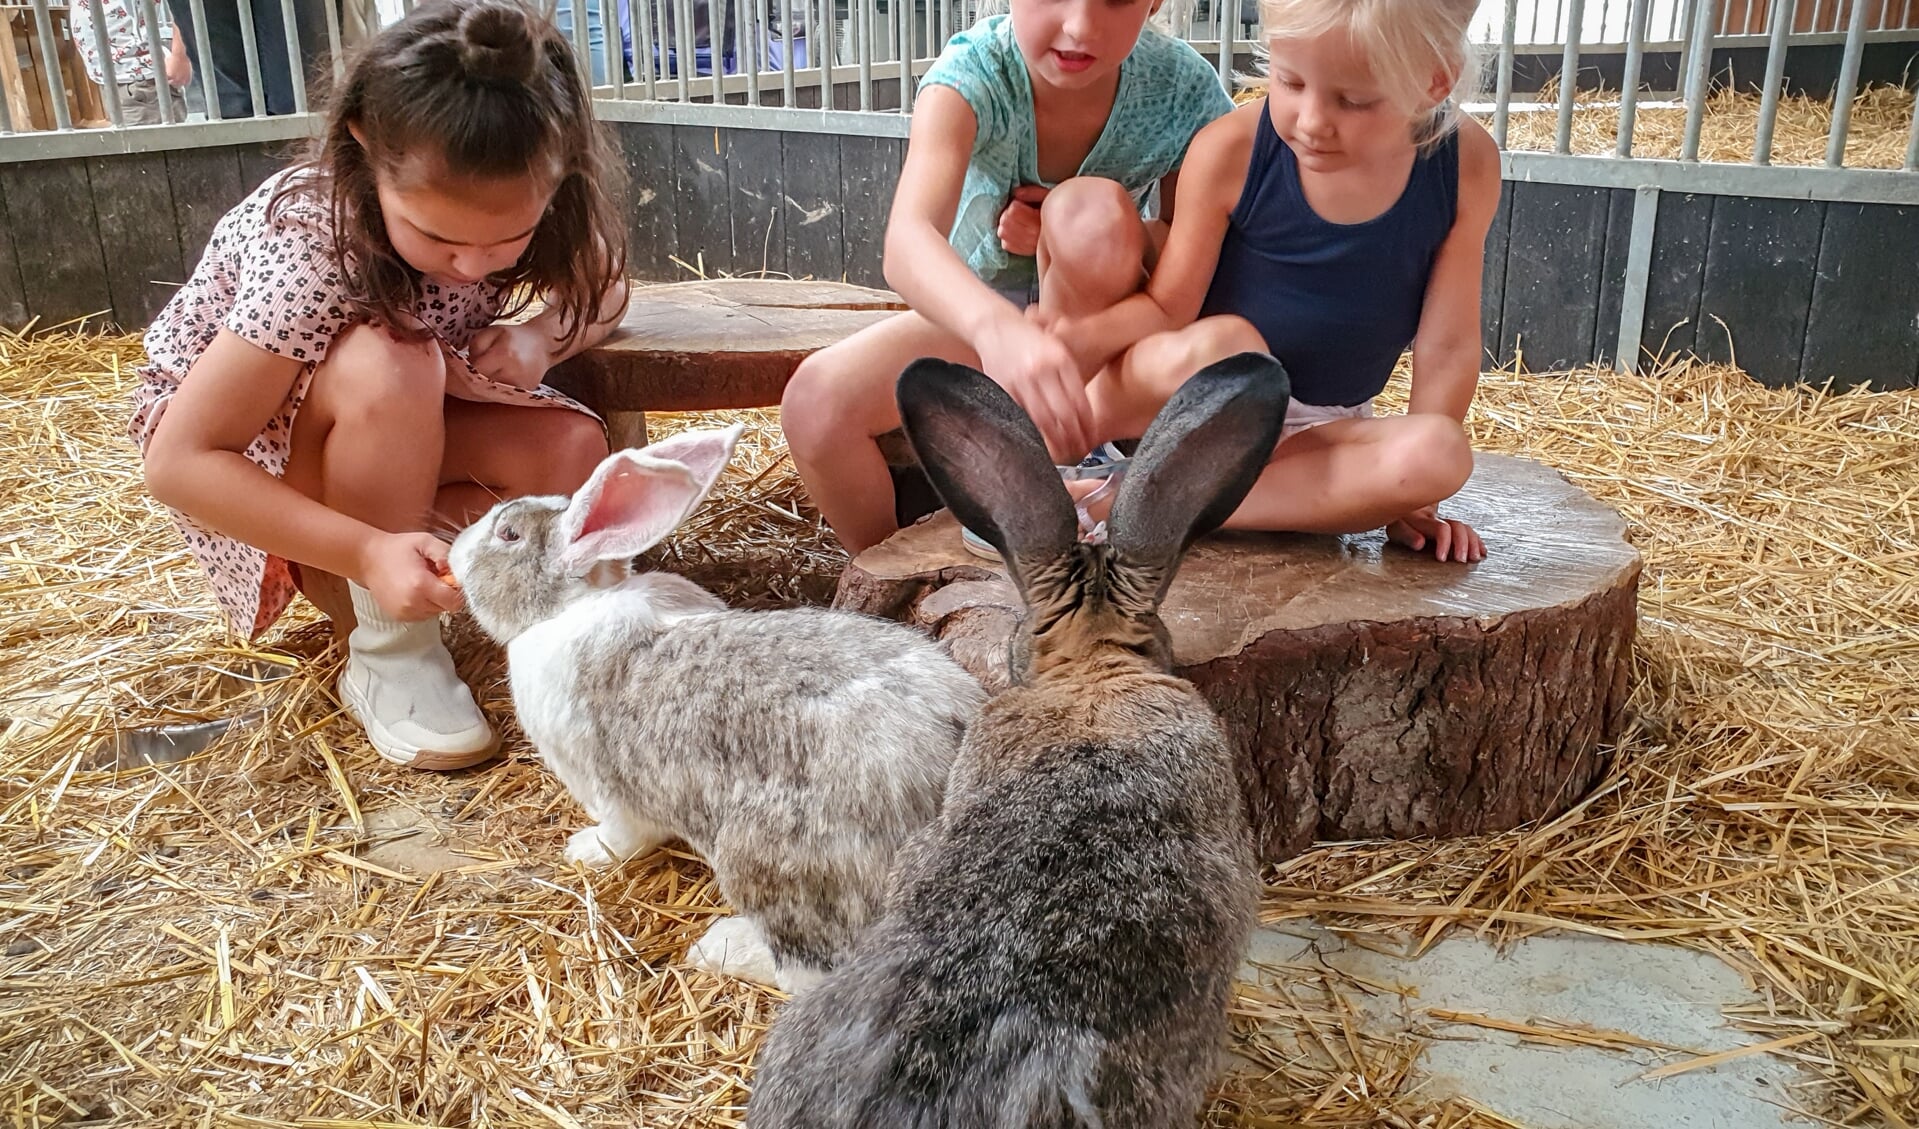 Bezoekertjes in de kinderboerderij Landerij De Park. (foto: Reverse Pixel Photography)